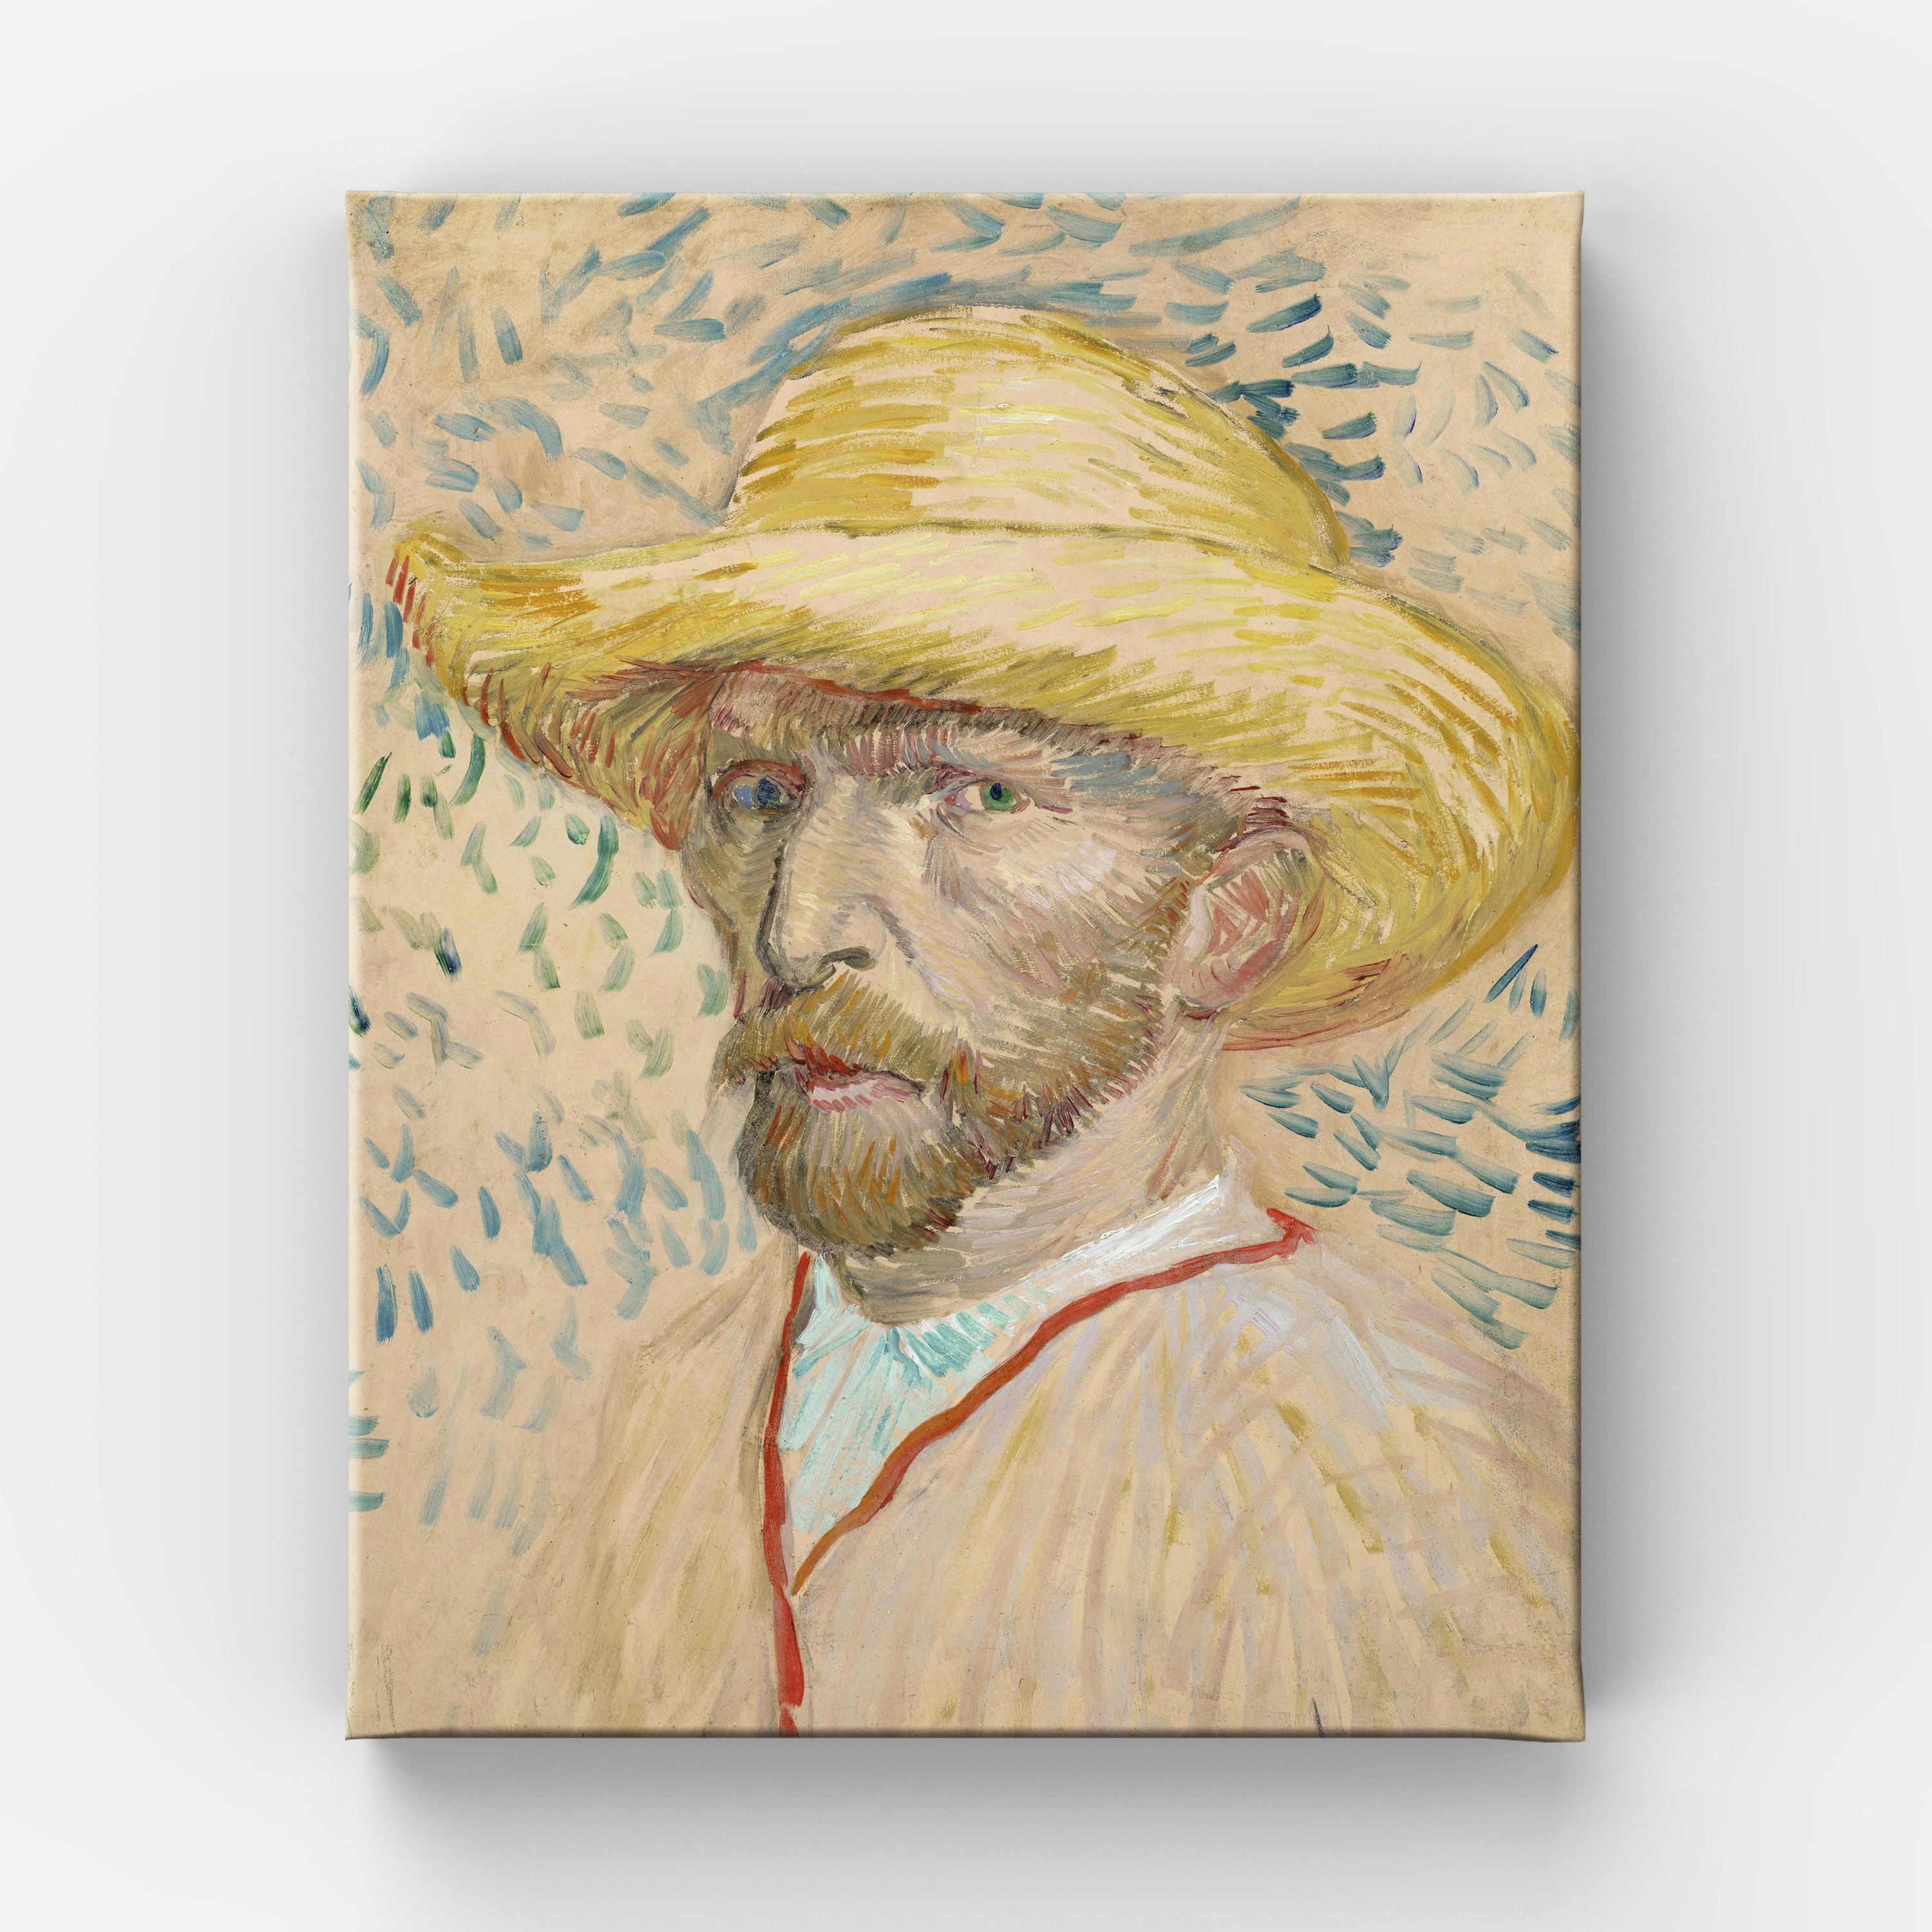 Ван гог автопортрет. Ван Гог Автопортреты. Венсан вагог автопортрет. Автопортрет Ван Гога 1887. Автопортрет Ван Гога в соломенной шляпе 1887.